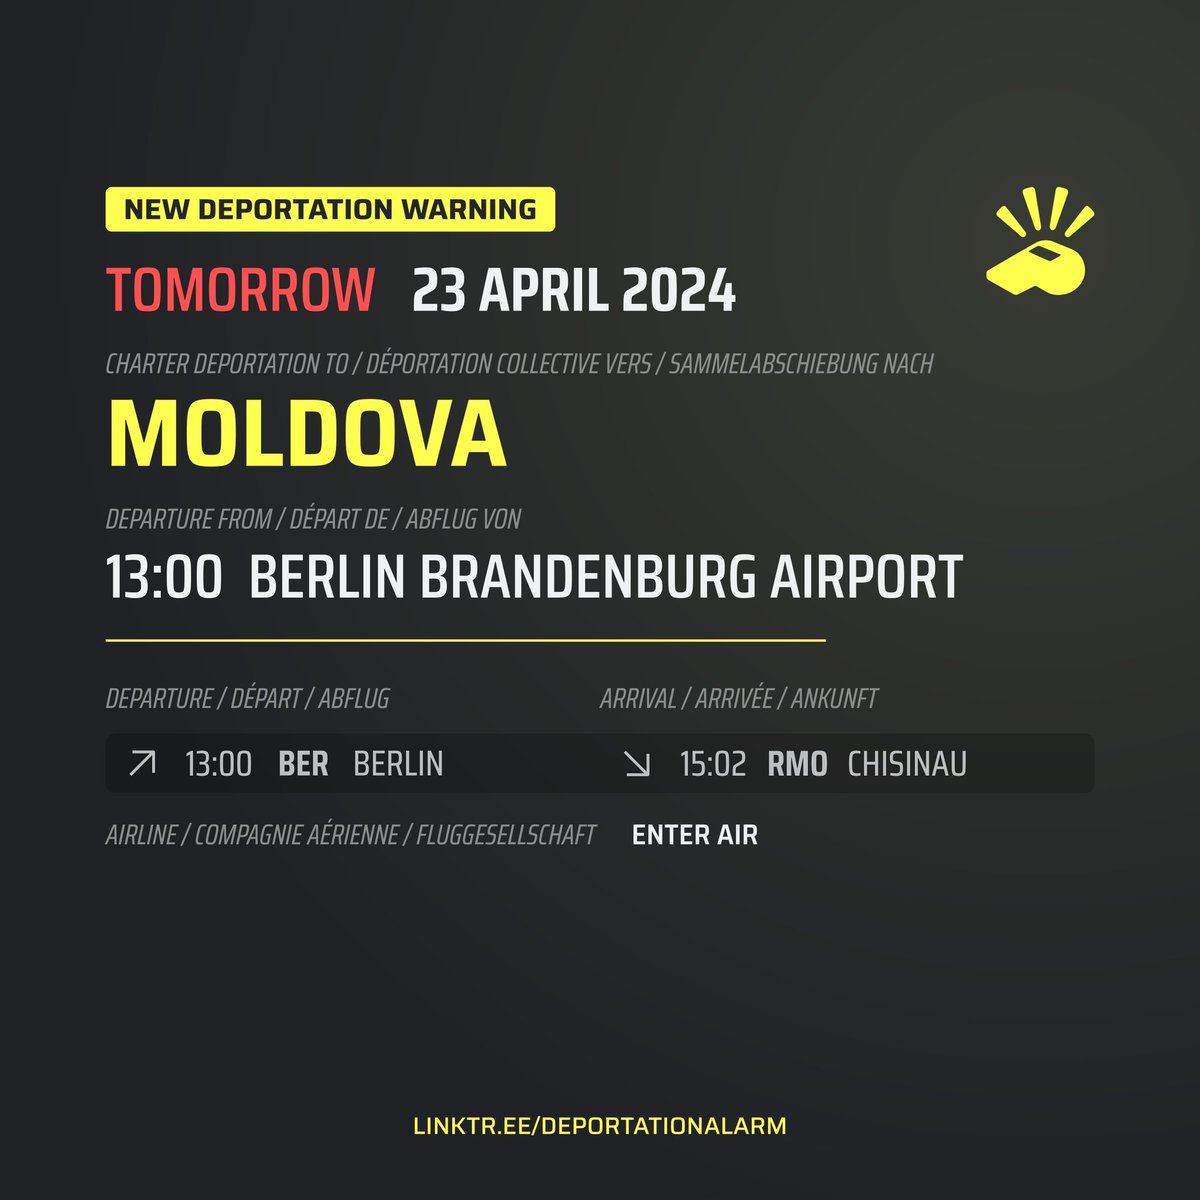 🔴 TOMORROW! 🟡 NEW WARNING: TO MOLDOVA ON 23/04/24 FROM BERLIN Mâine! O nouă deportare charter în Moldova este planificată pe 23 aprilie 2024. Plecarea ar trebui să fie la ora 13:00 de la Aeroportul Berlin. Sosirea este intenționată să fie la Chișinău la ora 15:02.